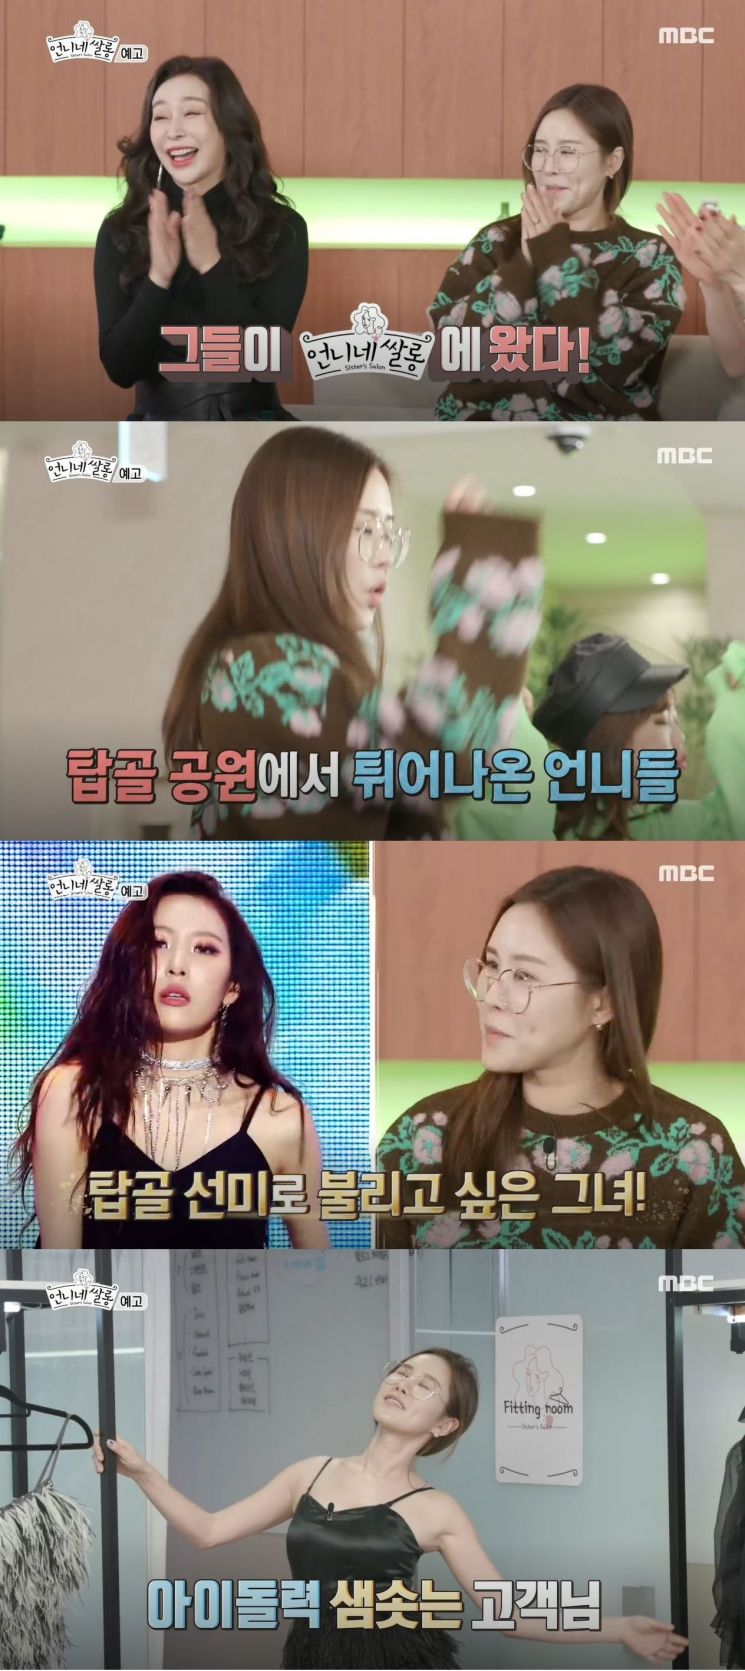 20일 오후 방송될 MBC '언니네 쌀롱'에서 룰라의 채리나가 탑골 선미로 불리고 싶은 속내를 털어놓는다/사진=MBC'언니네 쌀롱'방송 화면 캡쳐